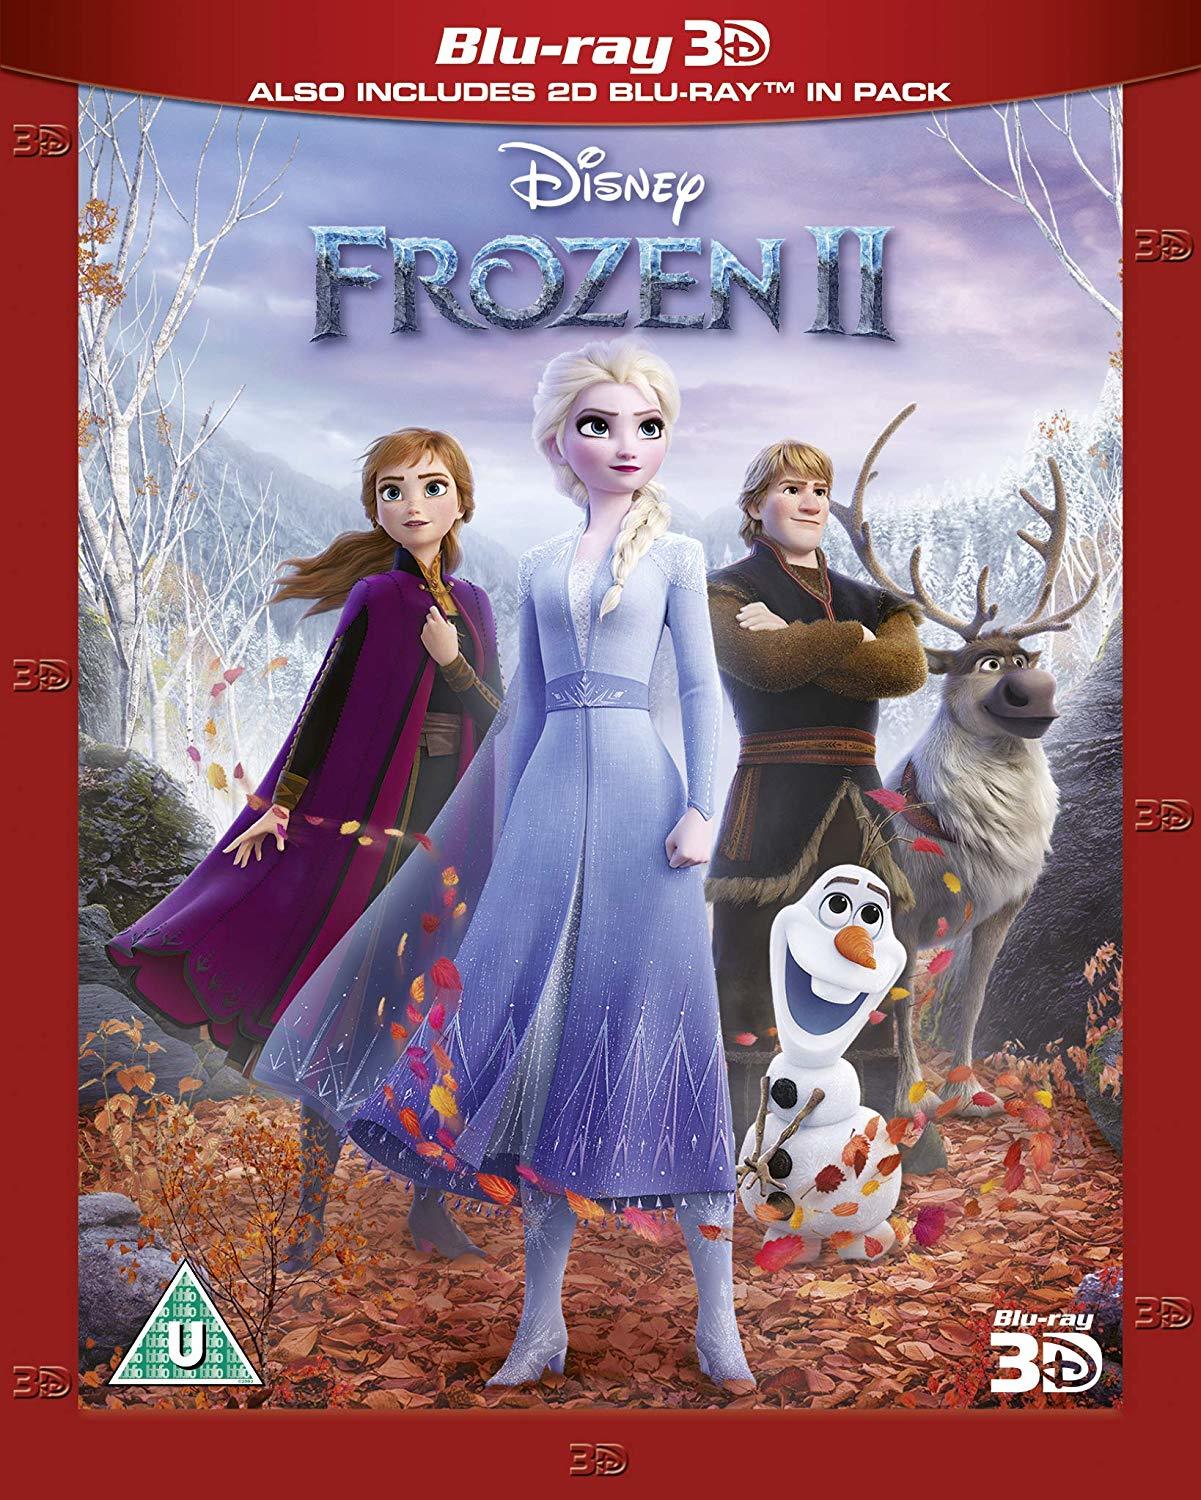 [ 冰雪奇缘2 3D / 魔雪奇緣2(港) / 冰雪奇緣2(台)  ][DIY简繁/中英双语字幕] Frozen II 2019 1080p 3D EUR Blu-ray AVC DTS-HD MA 7.1-Pete@HDSky    [39.75 GB ]-1.jpg